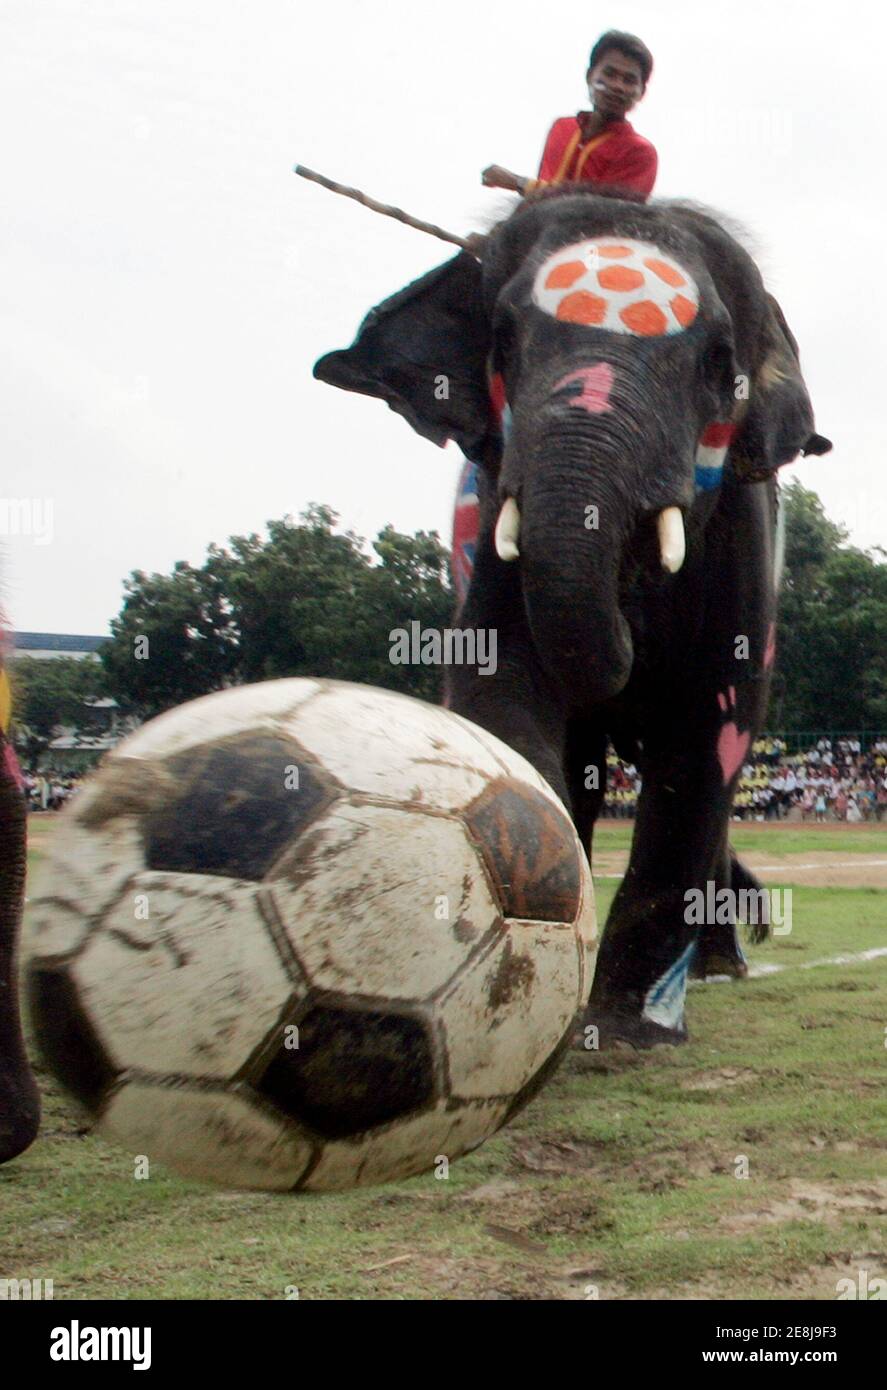 Un elefante gioca a calcio con studenti thailandesi nella provincia di Ayutthaya, 80 km (50 miglia) a nord di Bangkok, Thailandia 22 giugno 2006. La partita si è tenuta per combattere il gioco d'azzardo durante la Coppa del mondo 2006. REUTERS/Chaiwat Subprasom (THAILANDIA) Foto Stock